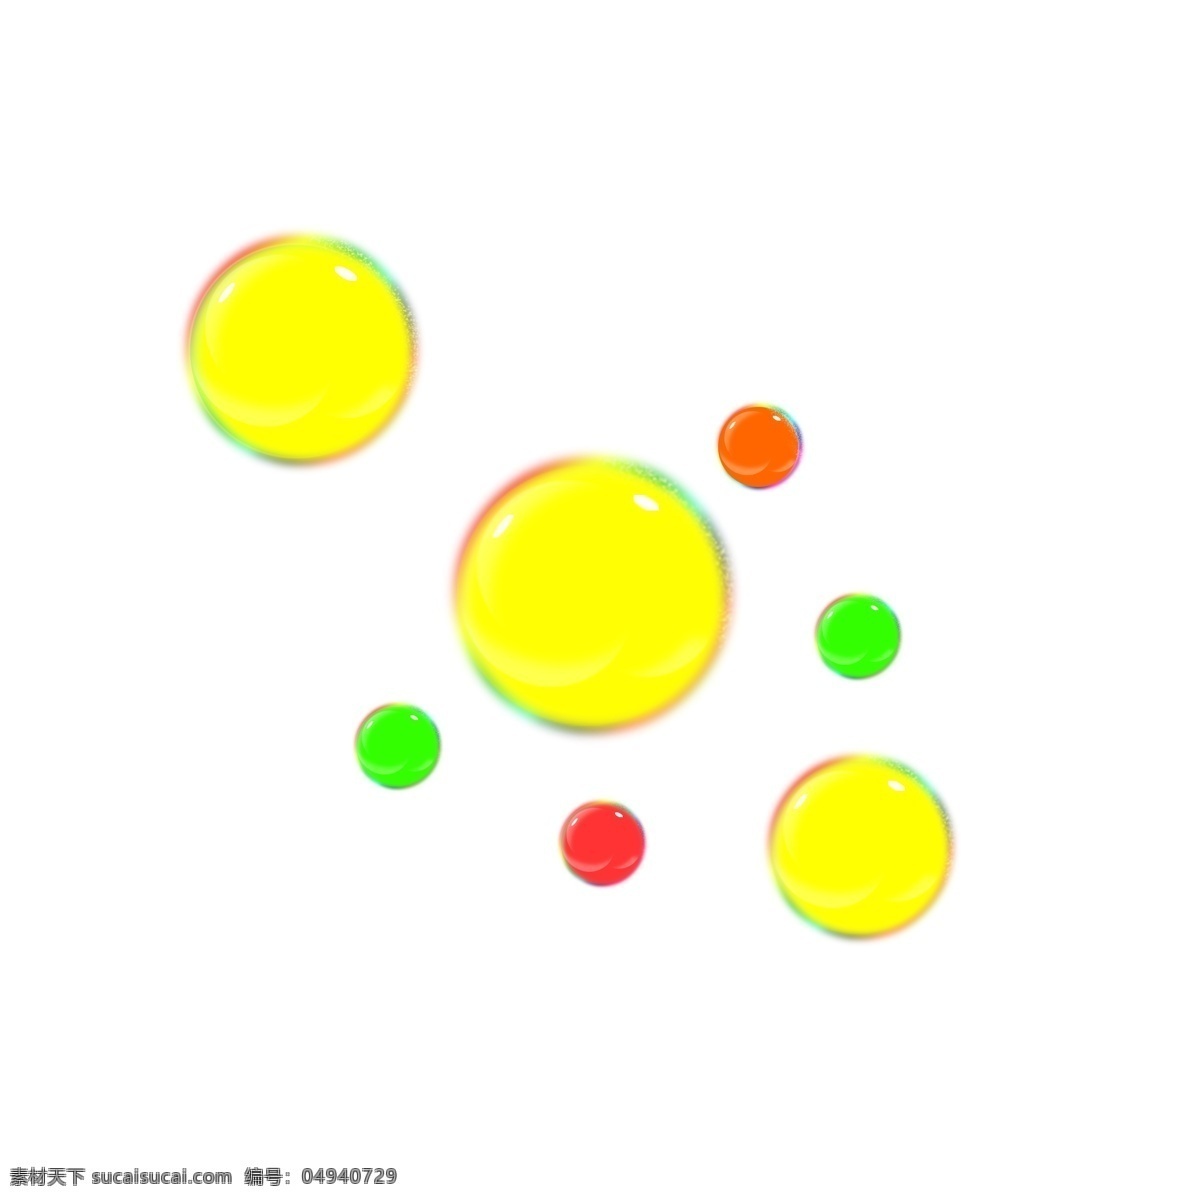 黄色 漂浮 气泡 插画 黄色的气泡 漂浮的气泡 卡通插画 气泡插画 泡泡插画 肥皂泡泡 玩具泡泡